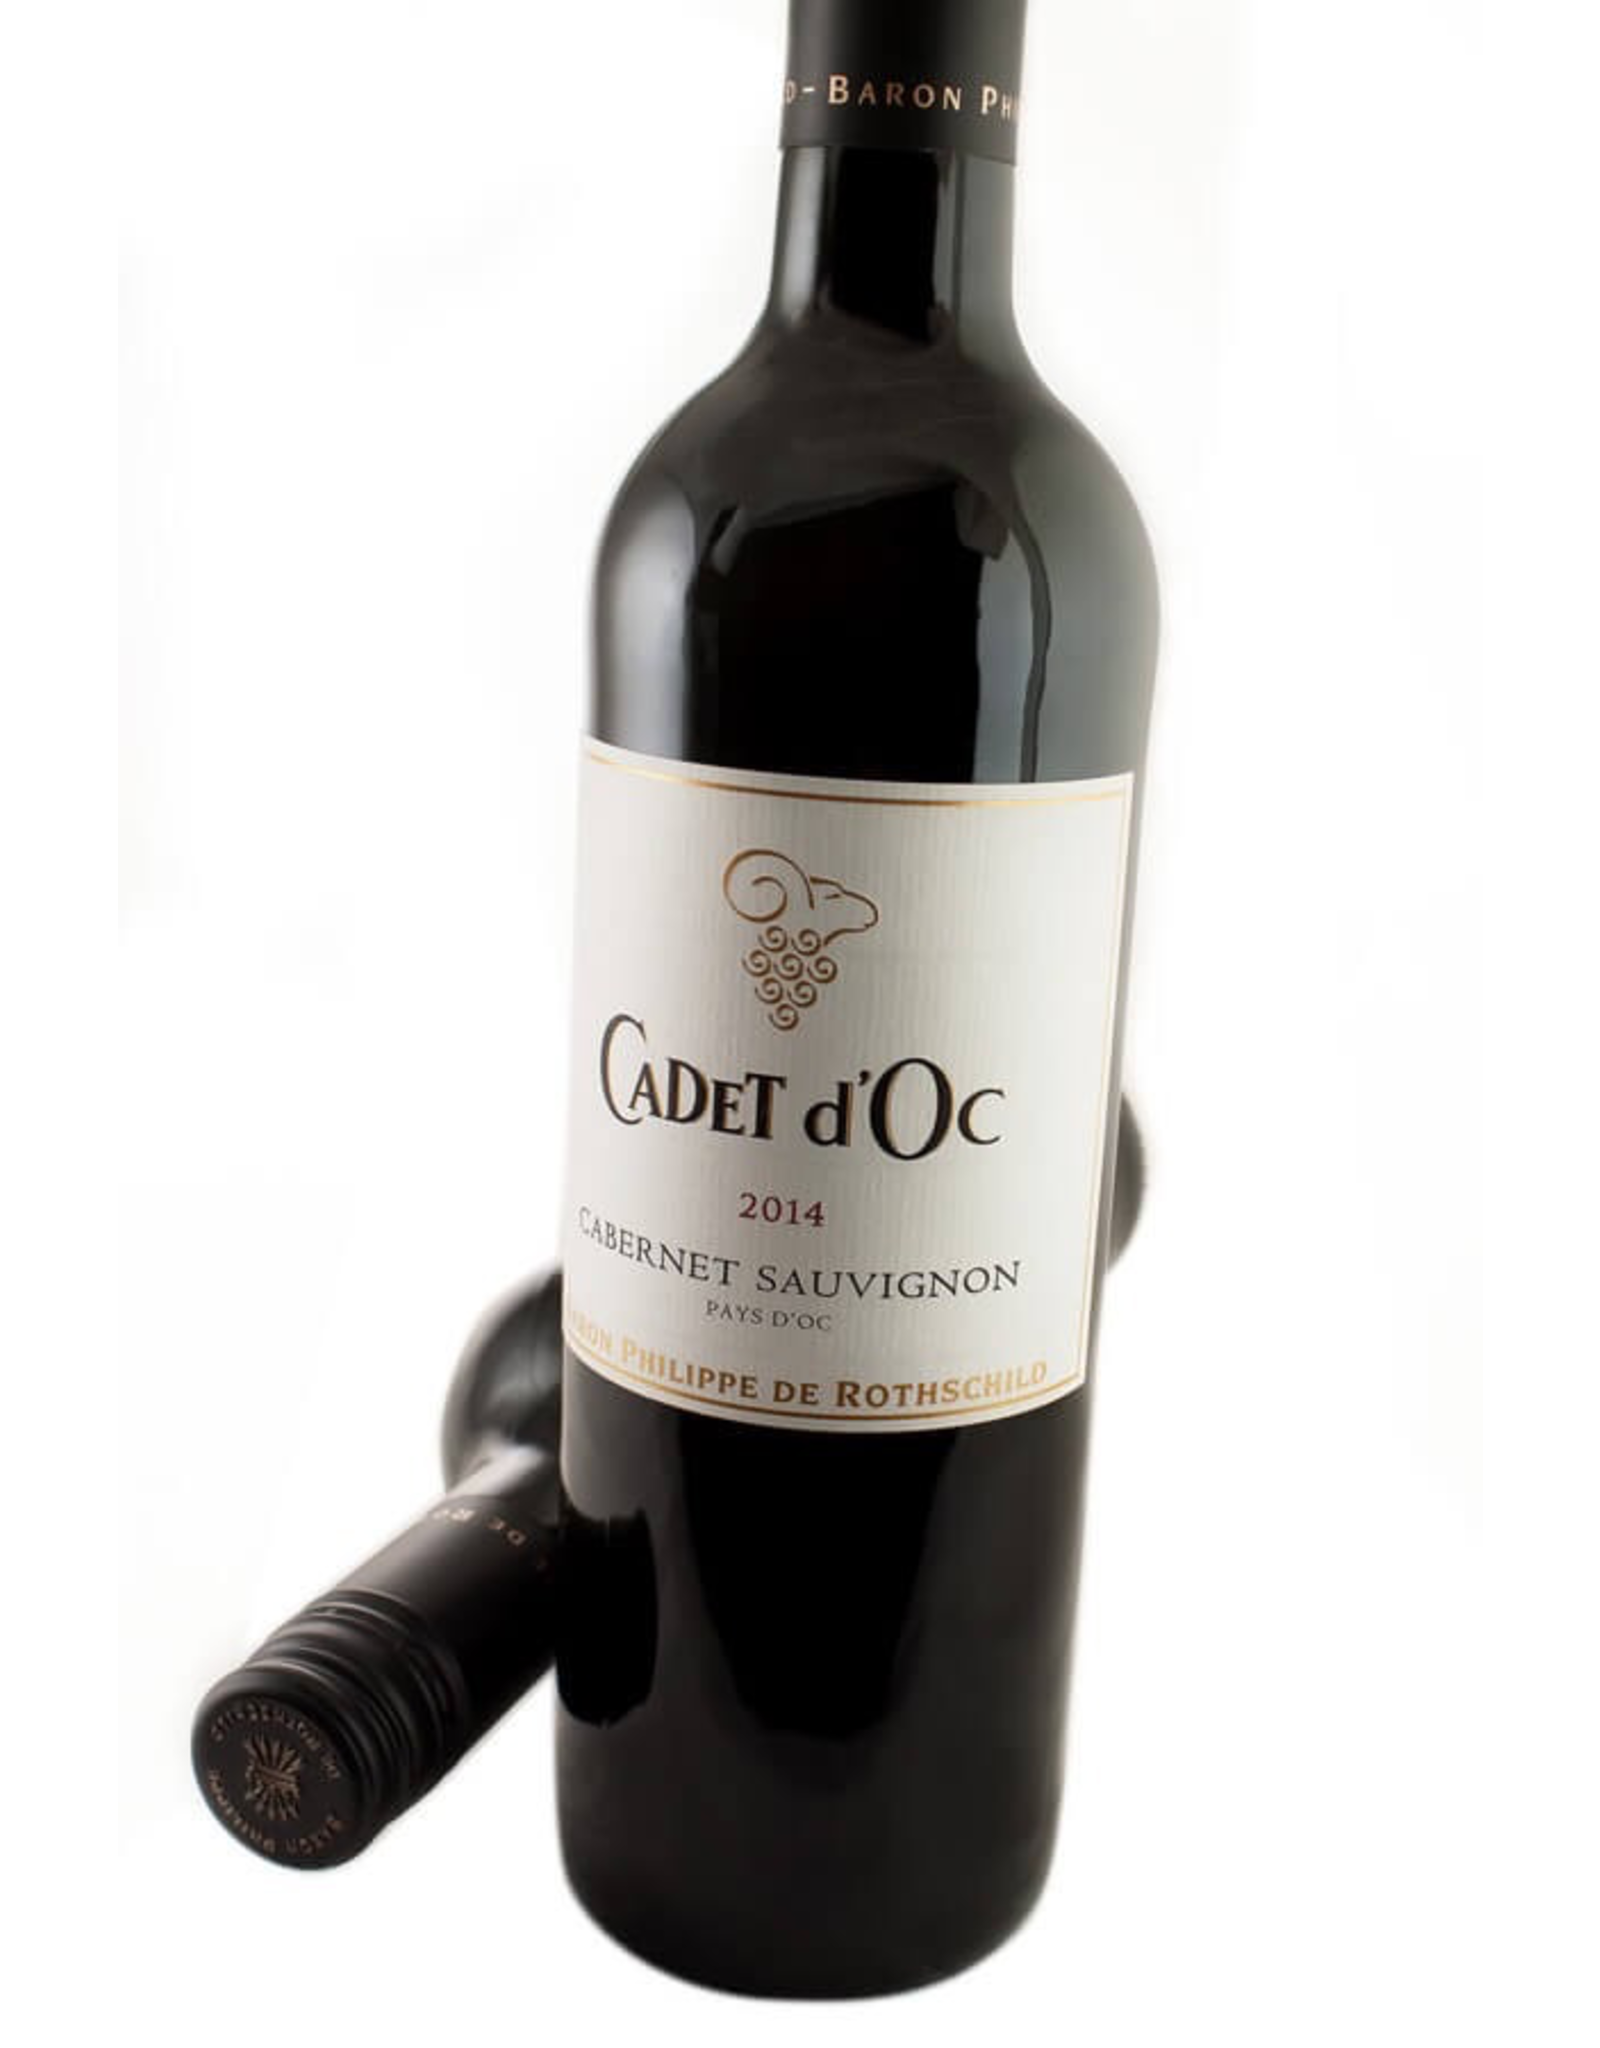 Red Wine 2014, Cadet d’Oc by Baron Philipe de Rothschild, Cabernet Sauvignon, Pays D’OC, Languedoc Roussillon, Sud De France, 13% Alc, CTnr, TW92